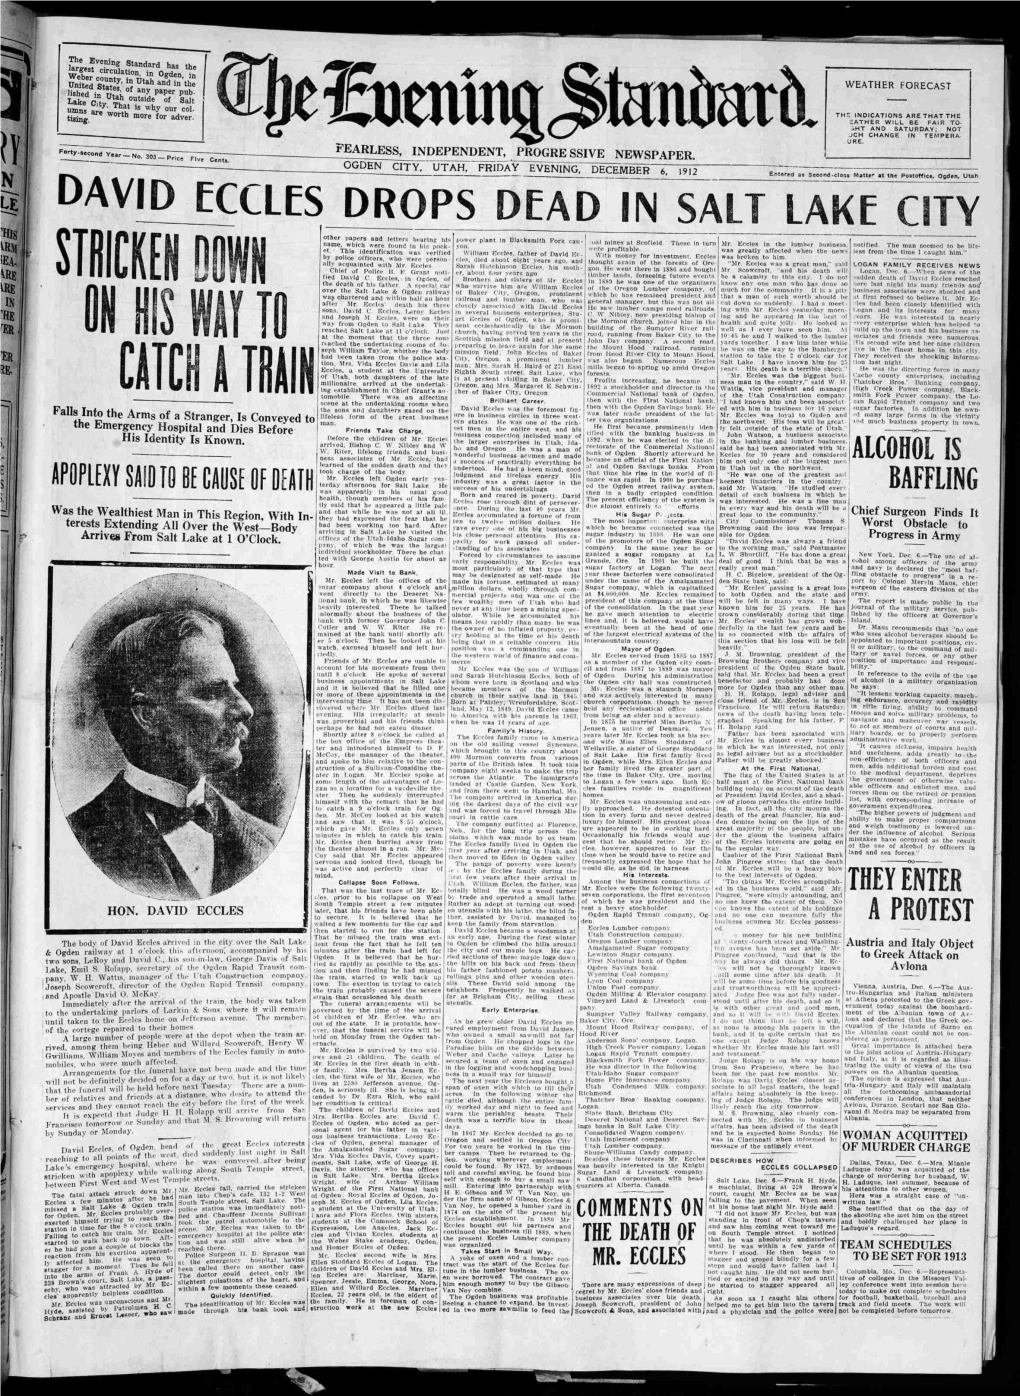 DAV,D ECCLES DROPS DEAD in SALT LAKE CITY